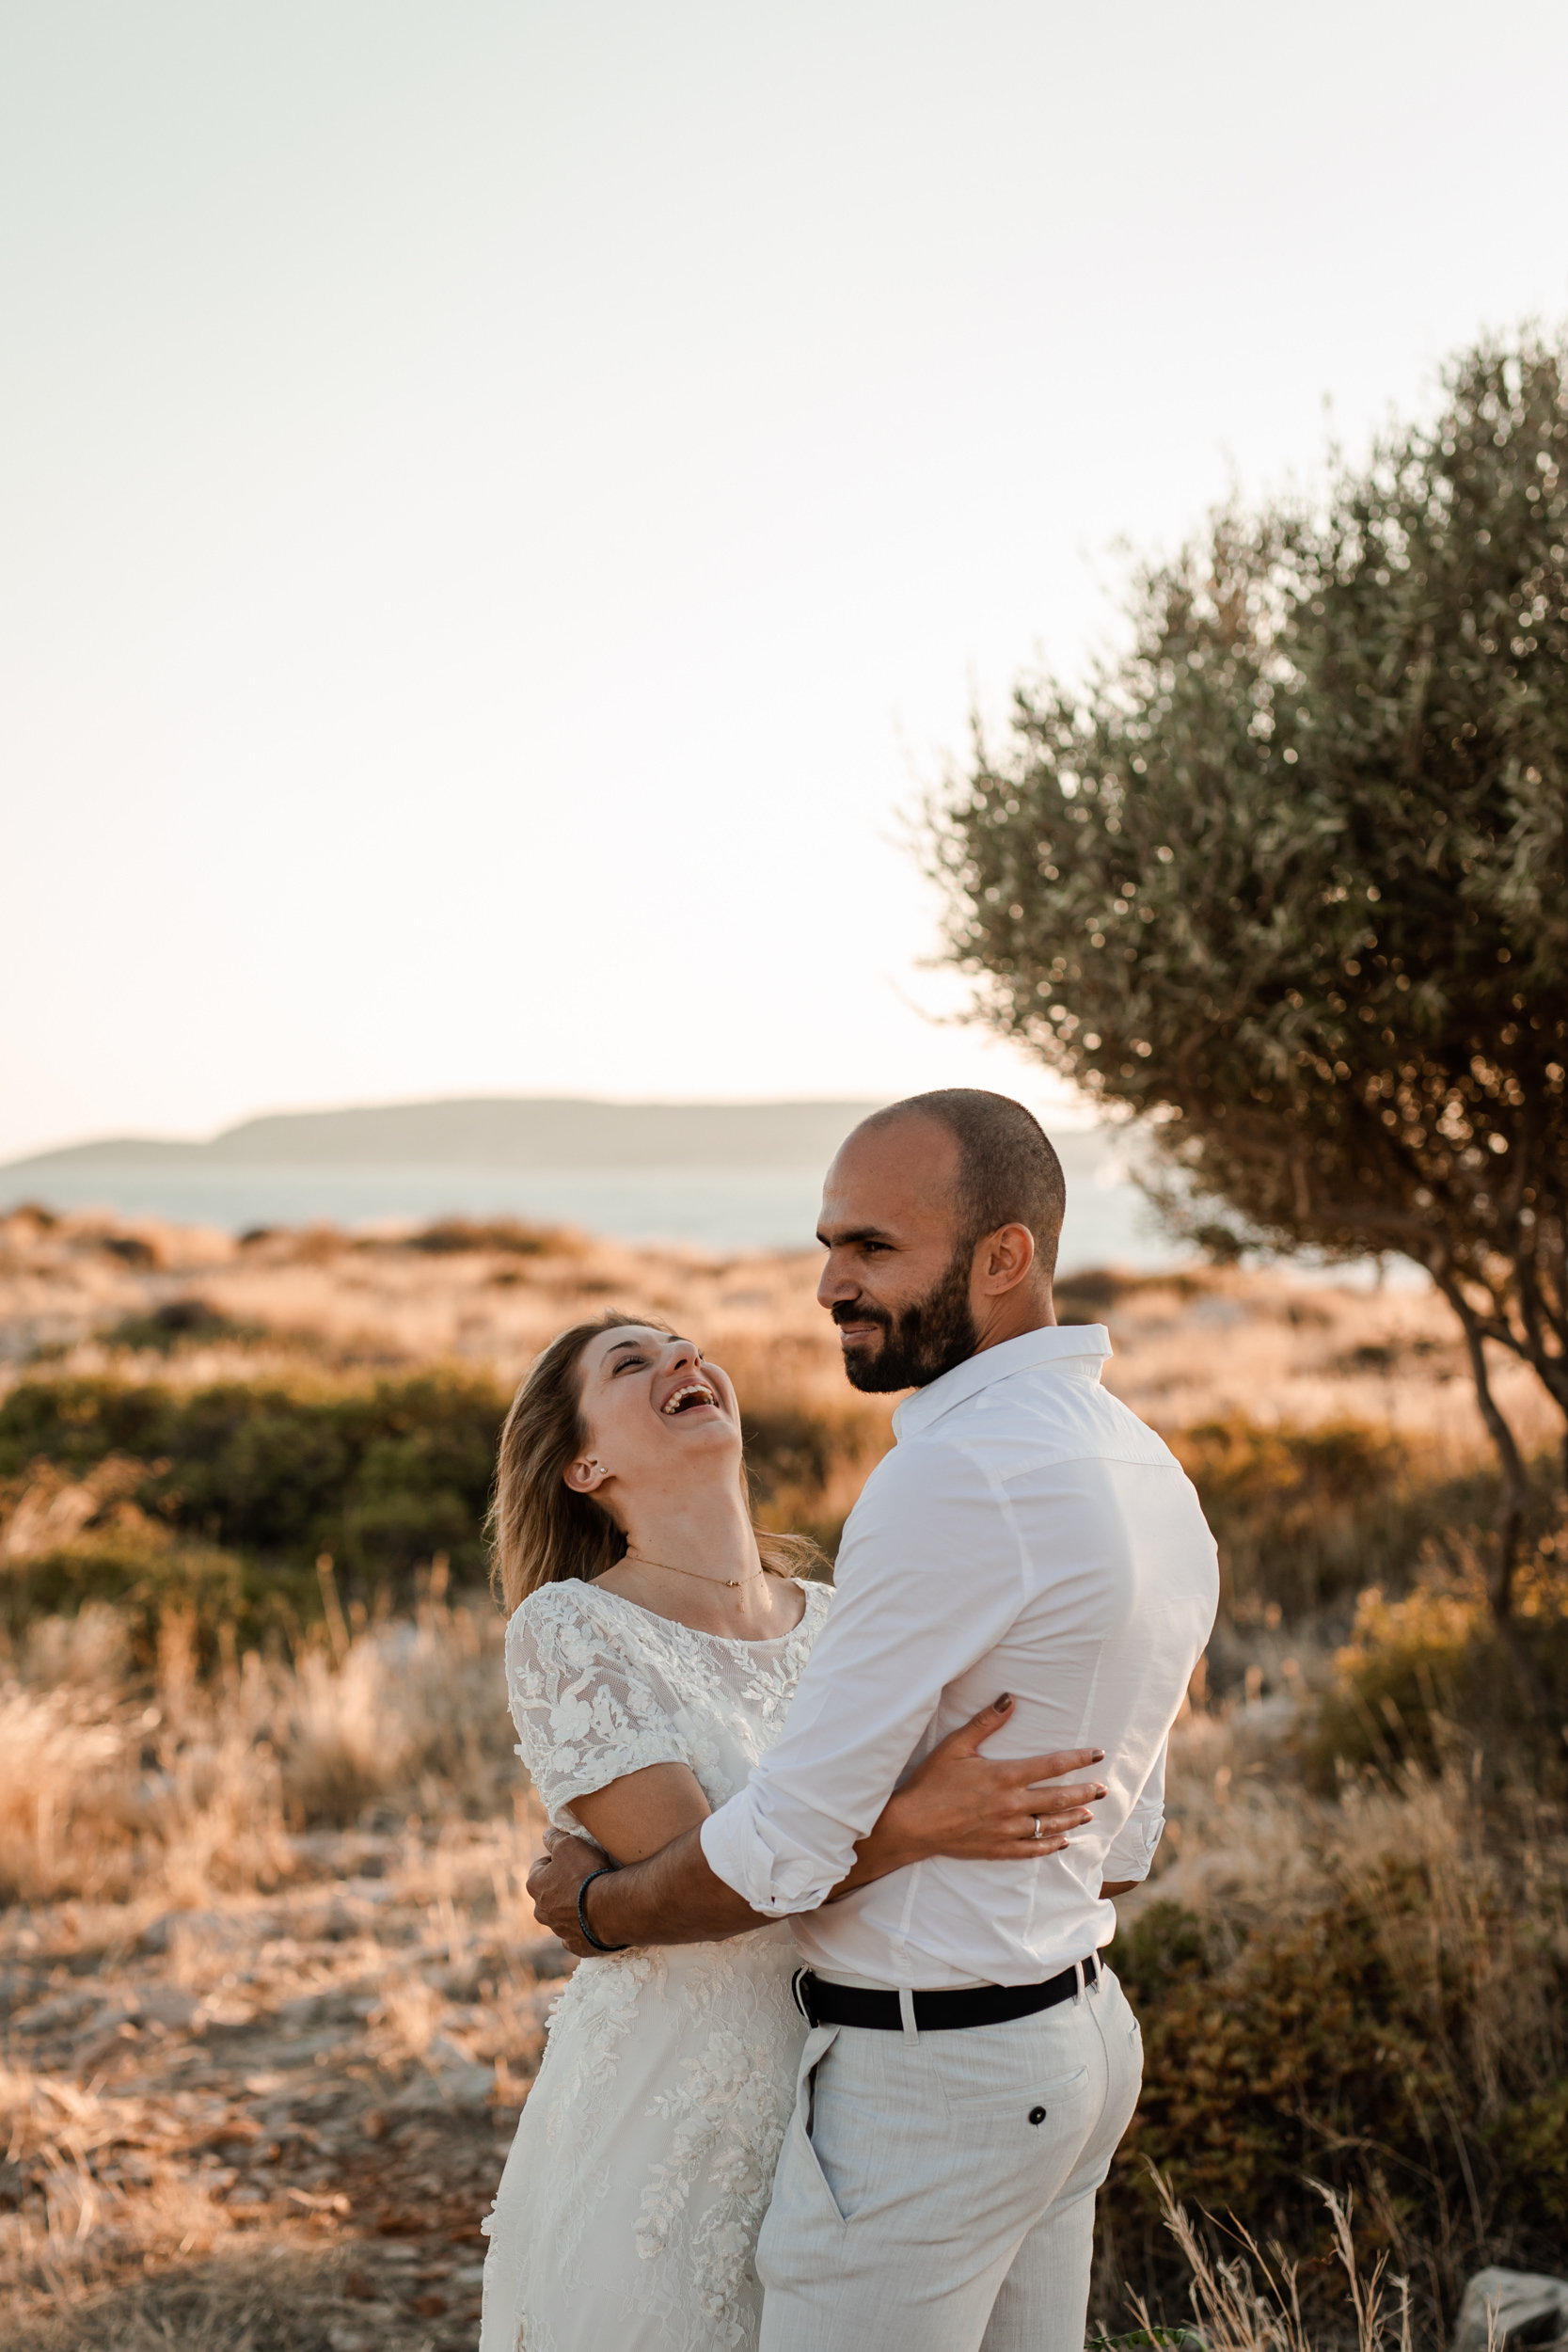 Bröllopspar skrattar under sin porträttsession i Grekland i solnedgången